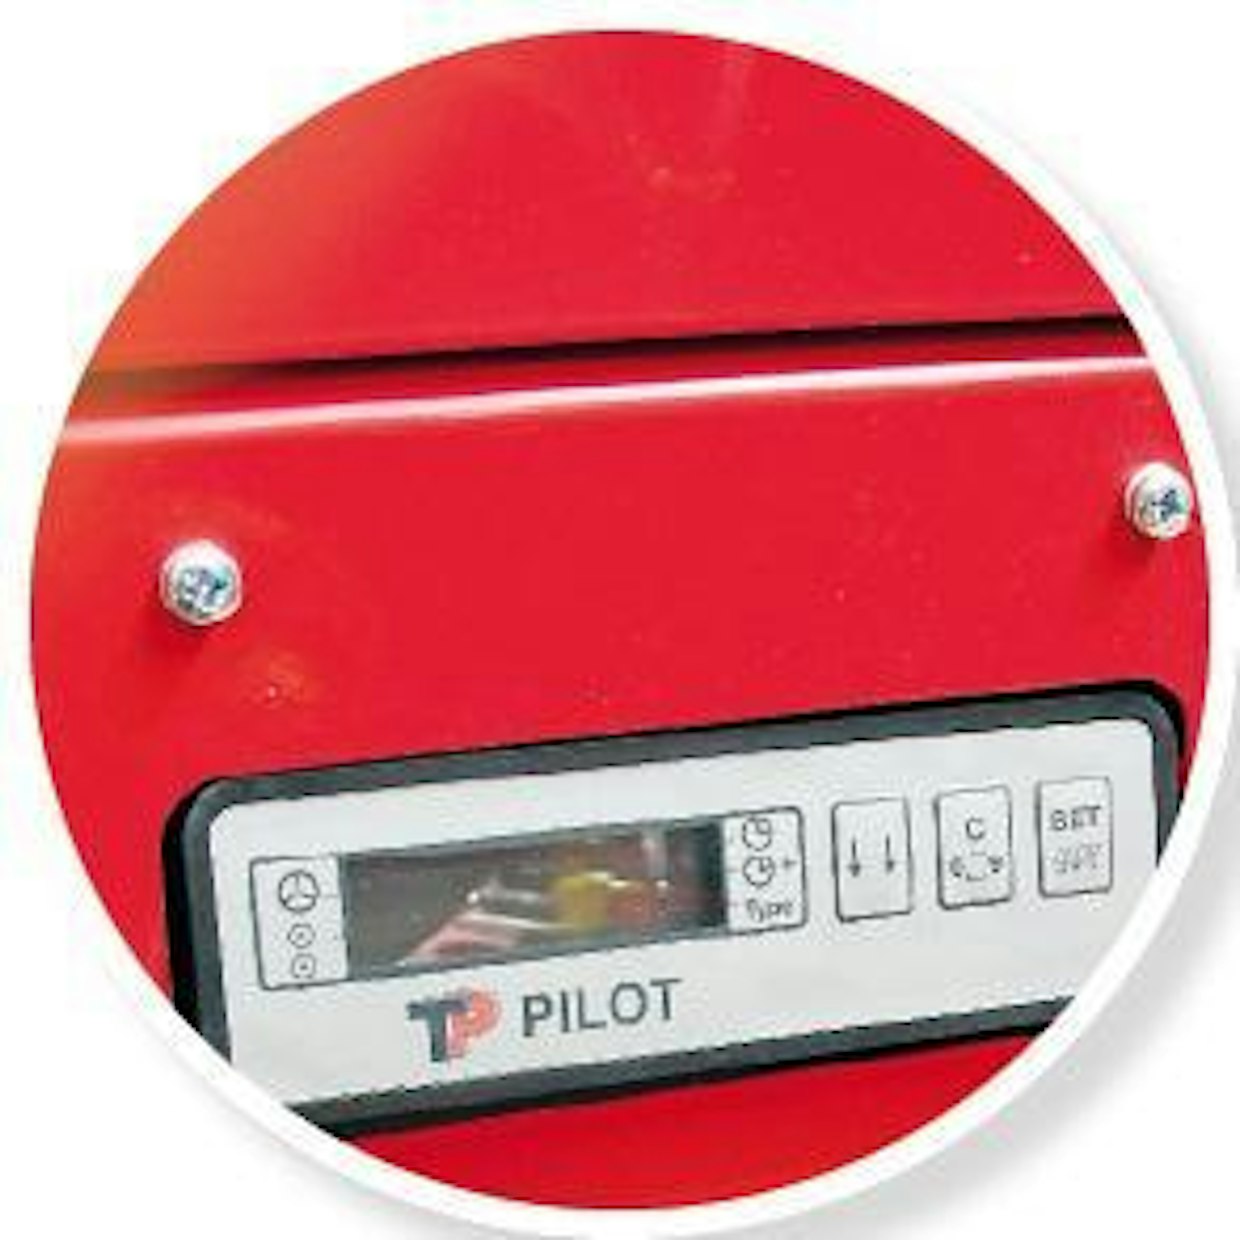 Hydraulisyöttöisessä TP-270 -hakkurissa on syöttönopeutta säätävä, teräroottorin akselin elektroninen TP Pilot -kierroslukuvahti. Sama laite löytyy vakiona myös TP-130 -puistohakkurista. (PJ)